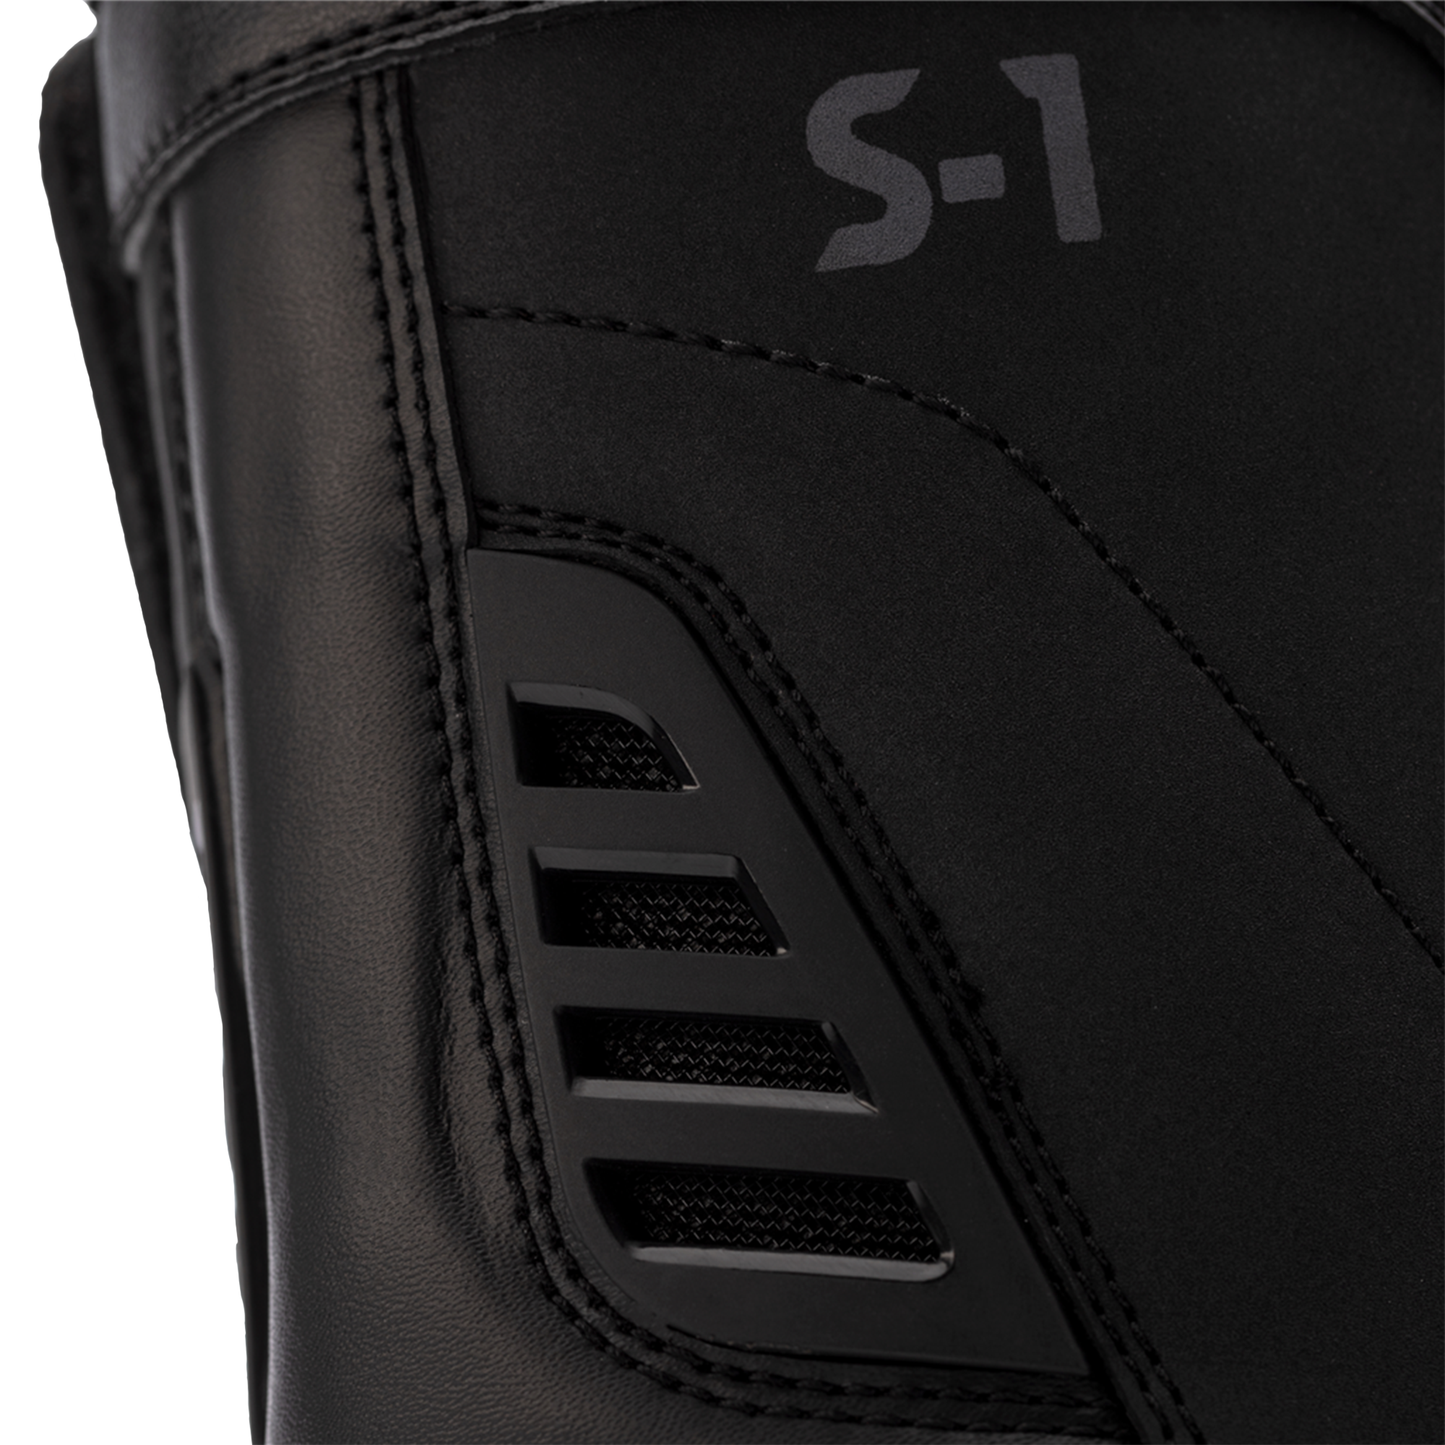 RST S1 Men's Waterproof Boots